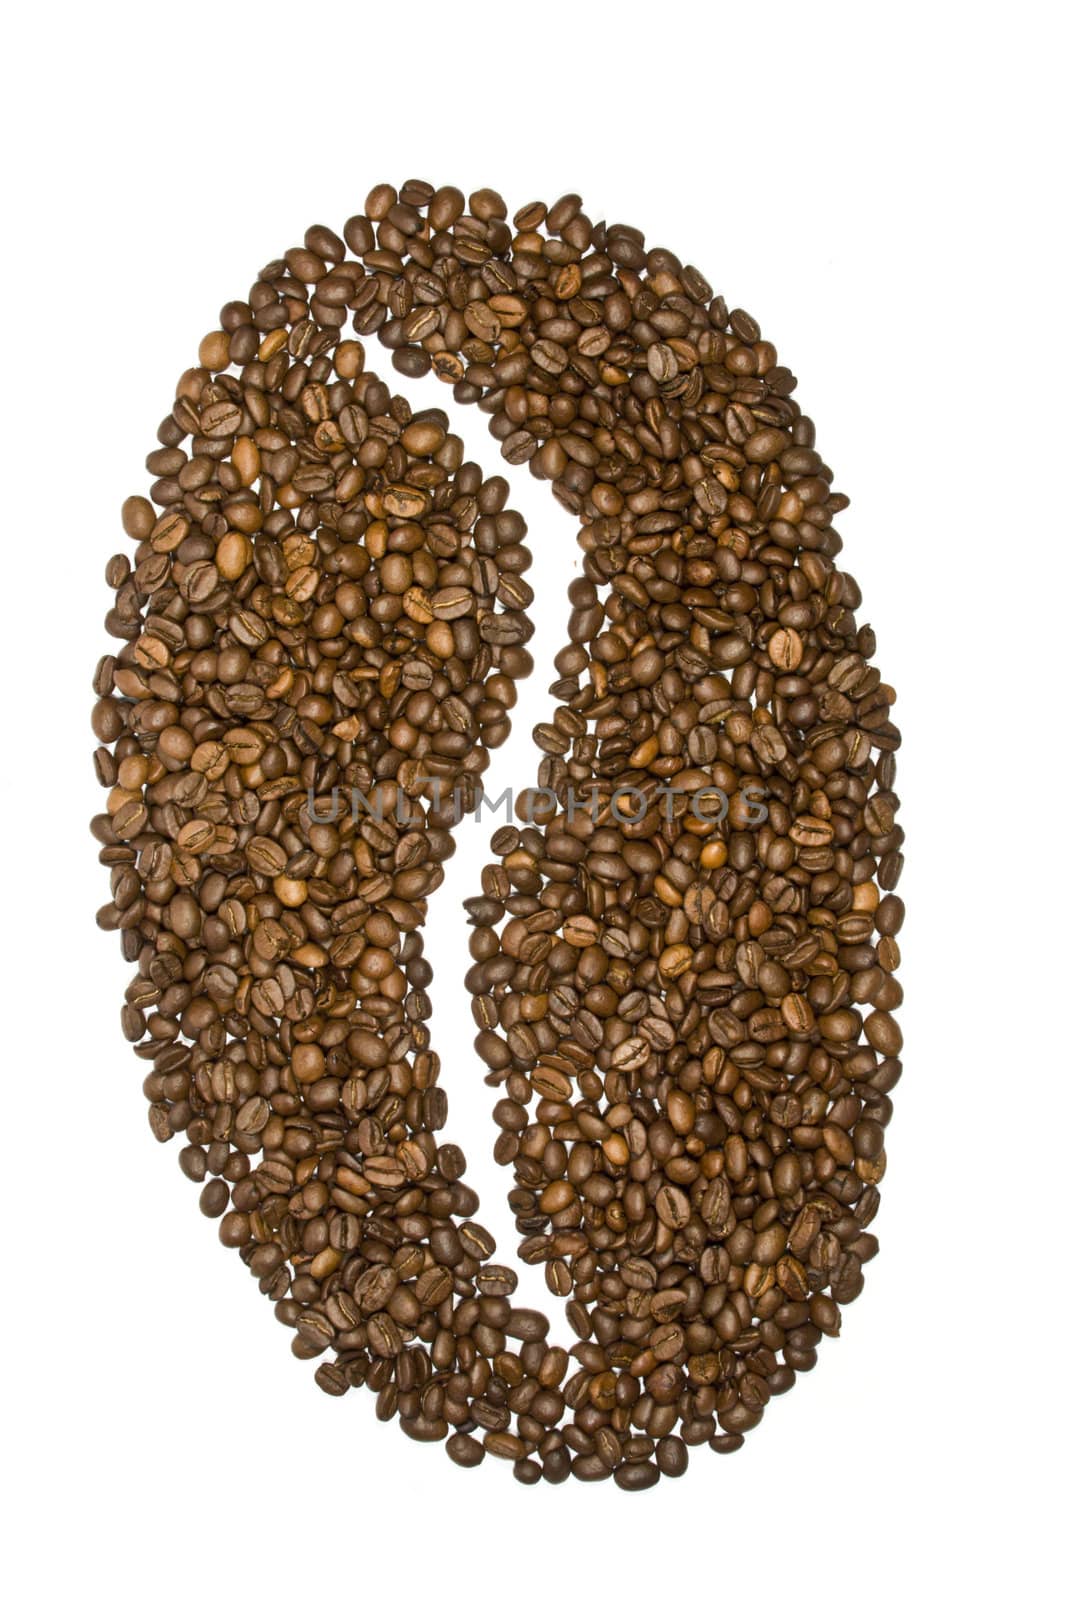 Coffee bean by smoki